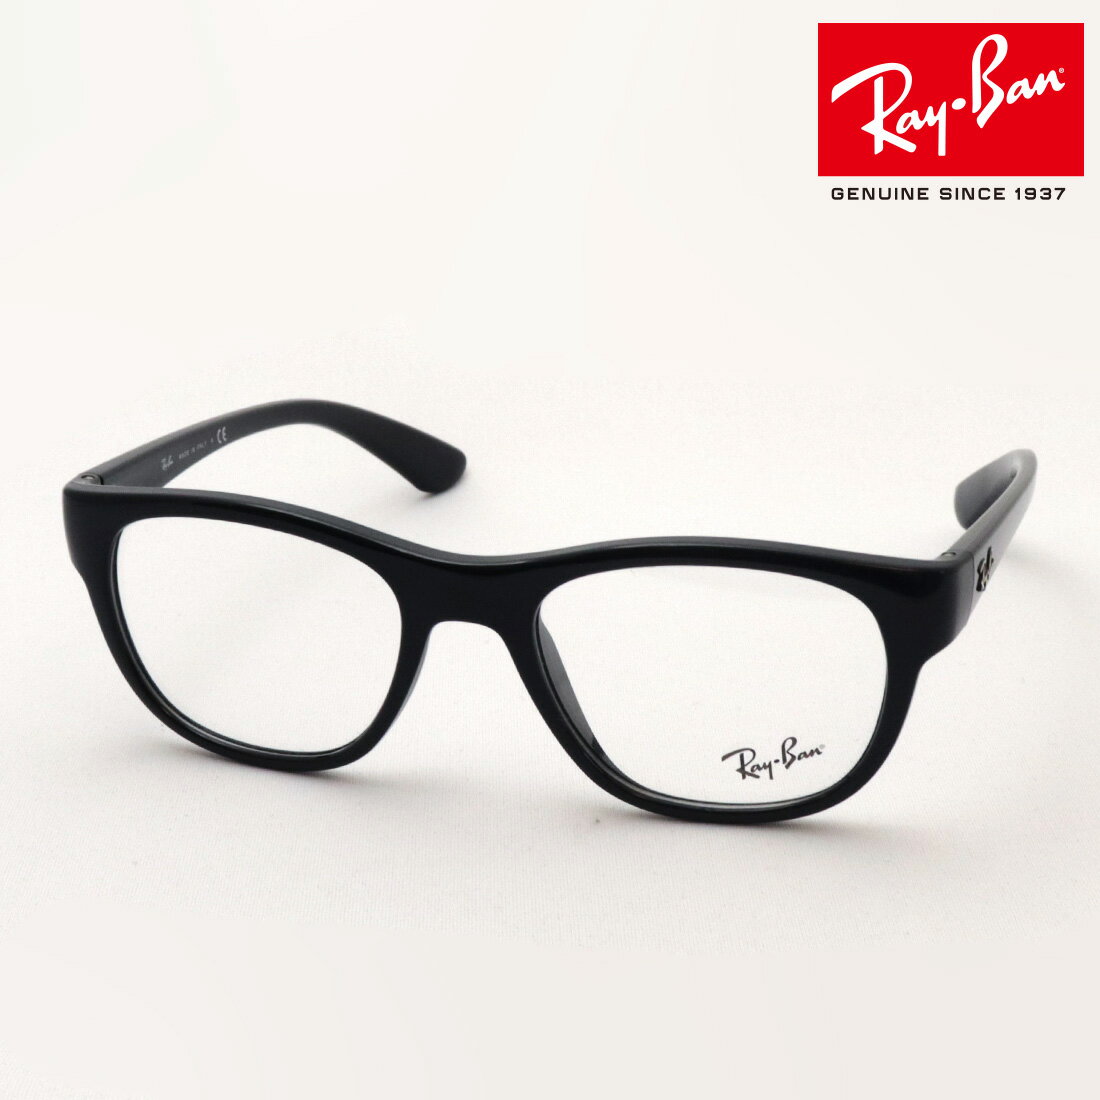 レイバン メガネ メンズ プレミア生産終了モデル 正規レイバン日本最大級の品揃え レイバン メガネ フレーム Ray-Ban RX7191 2000 伊達メガネ 度付き ブルーライト カット 眼鏡 黒縁 RayBan Made In Italy ウェリントン ブラック系